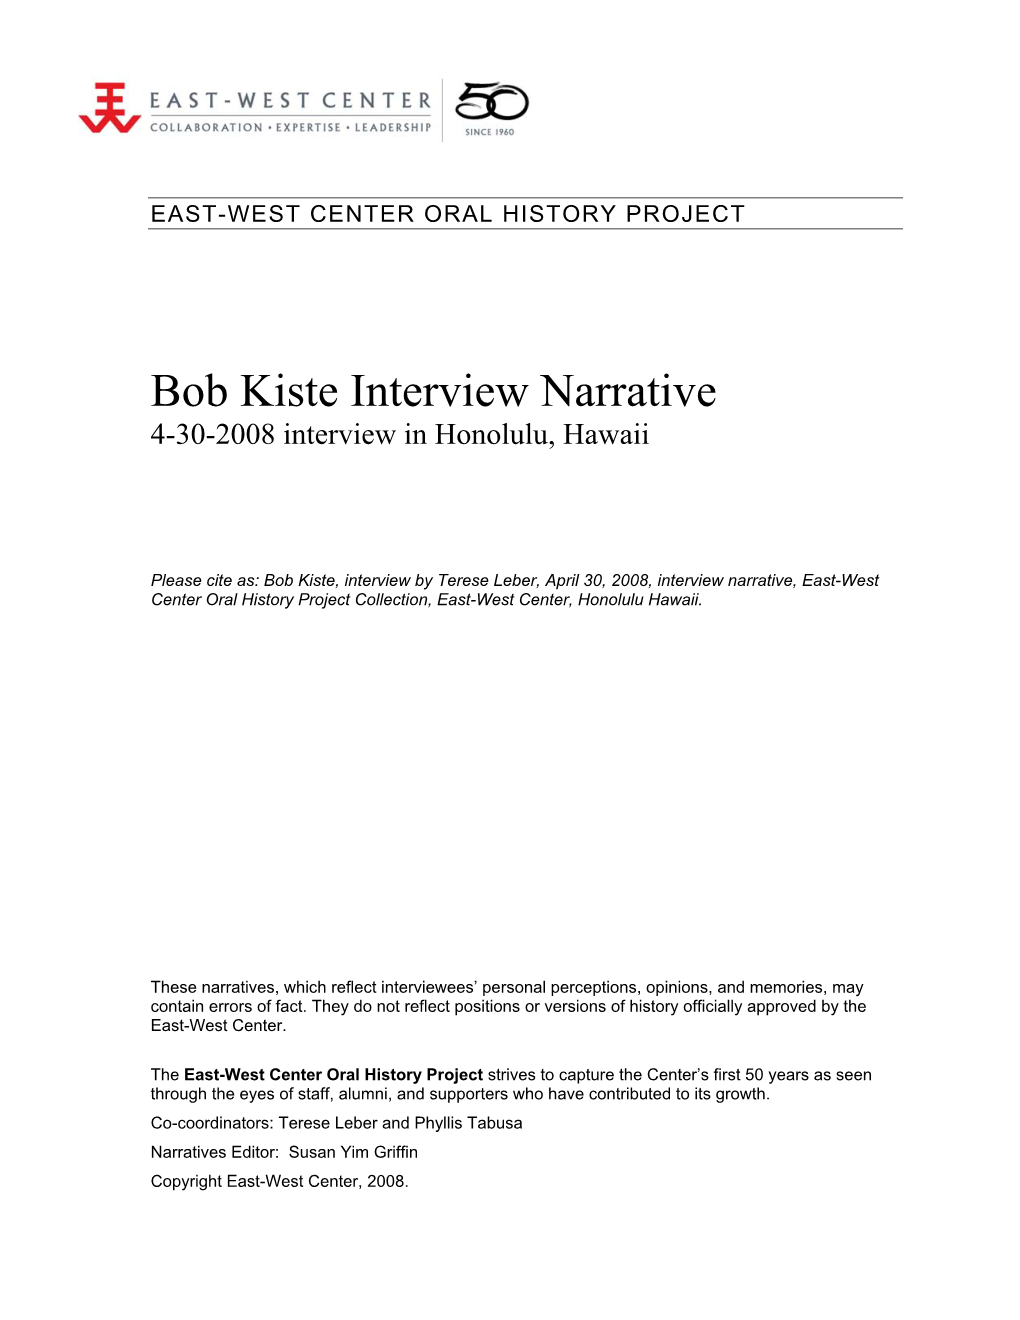 Read Kiste's Interview Narrative